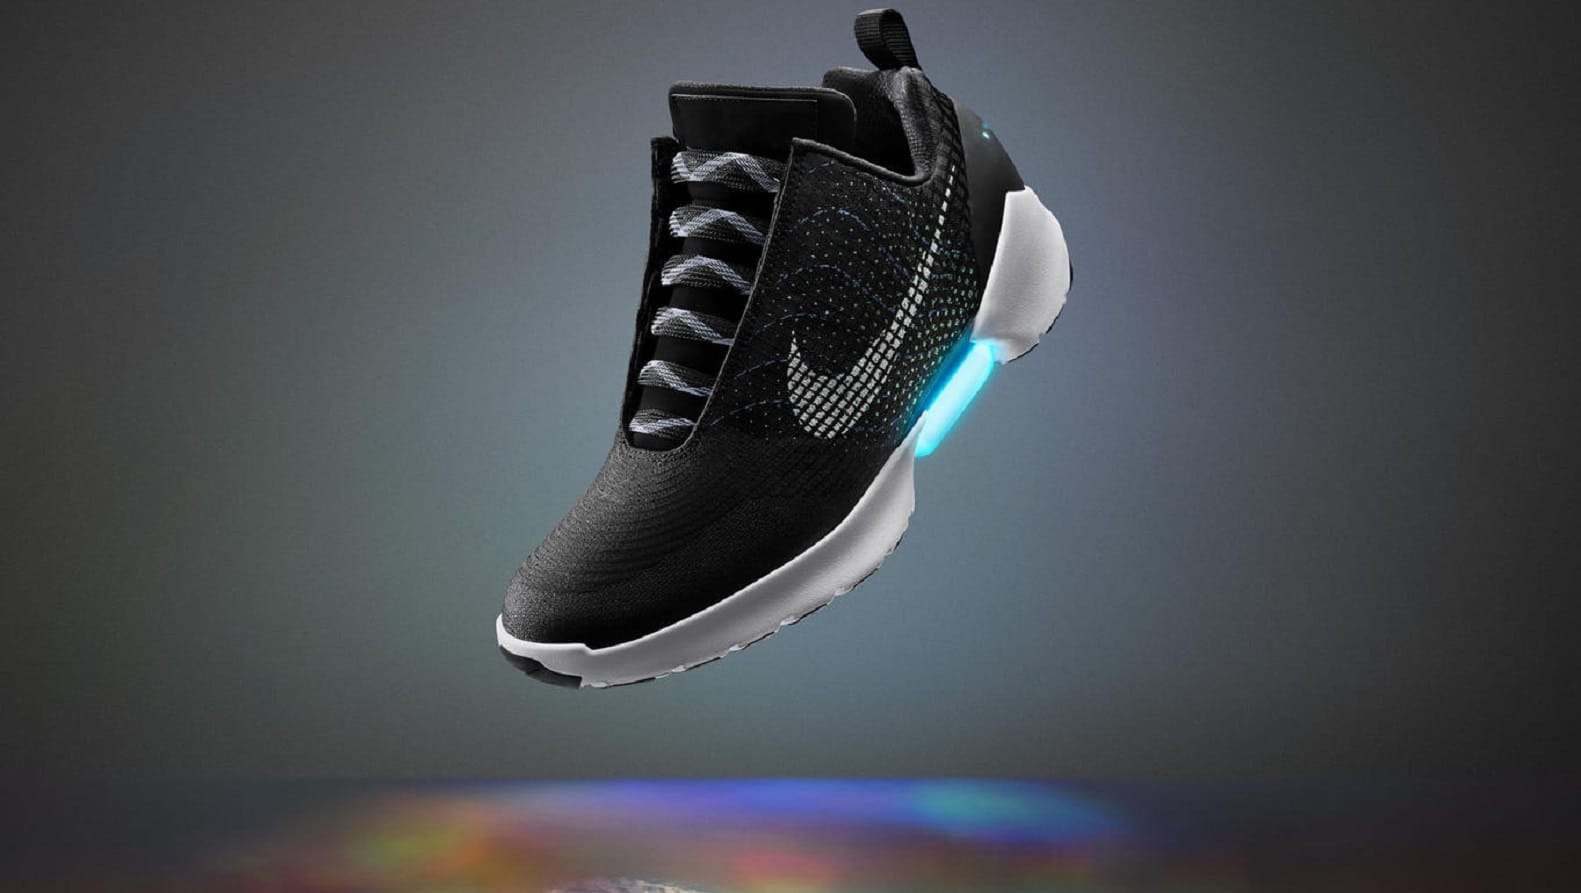 I morgen vil Nike avduke sine nye selvknytende sko.